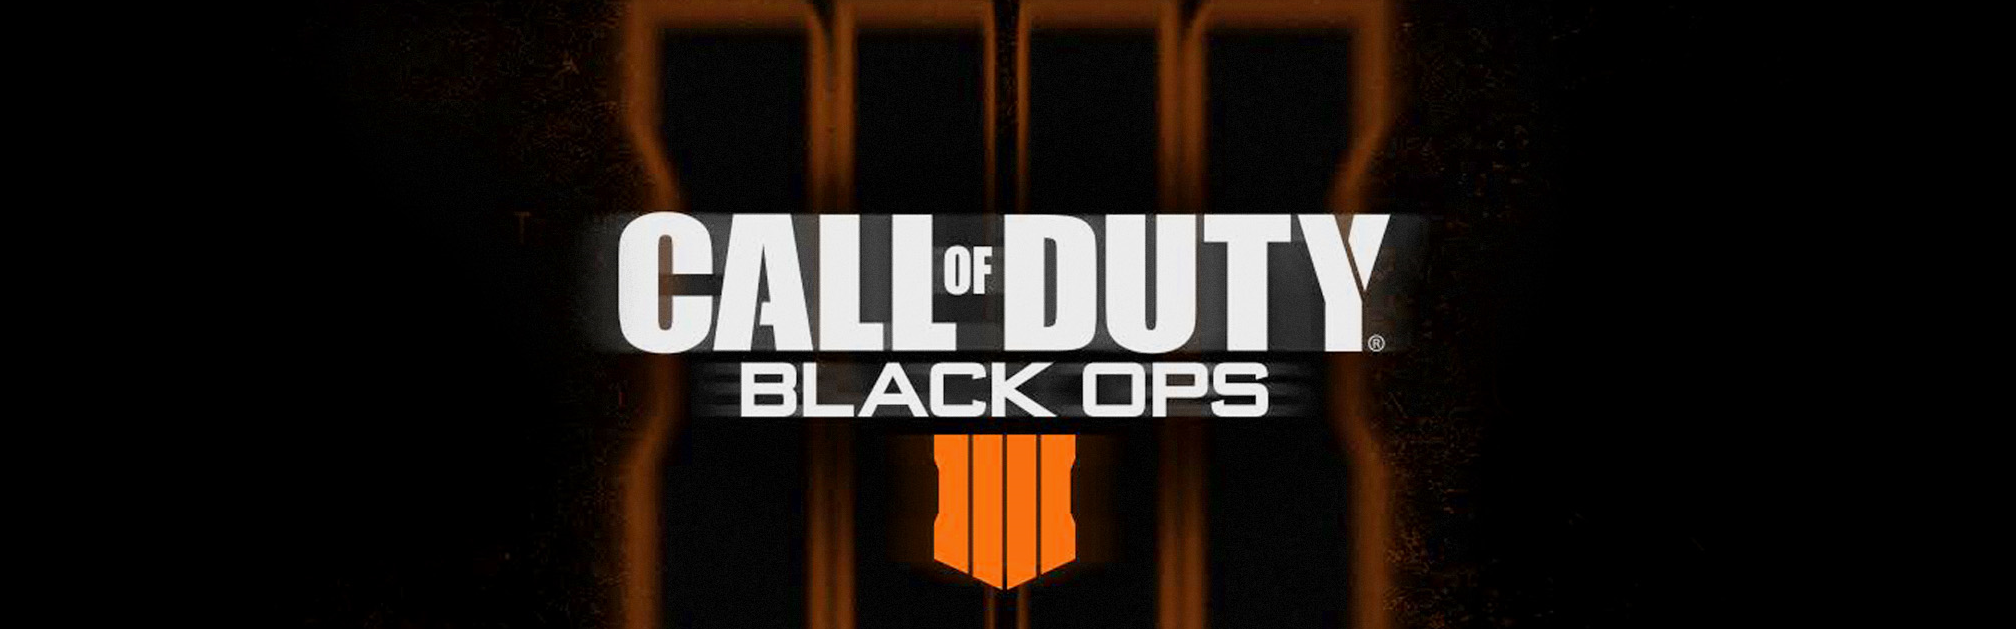 Call of Duty Black Ops 4 Zombies için resmi fragman yayımlandı